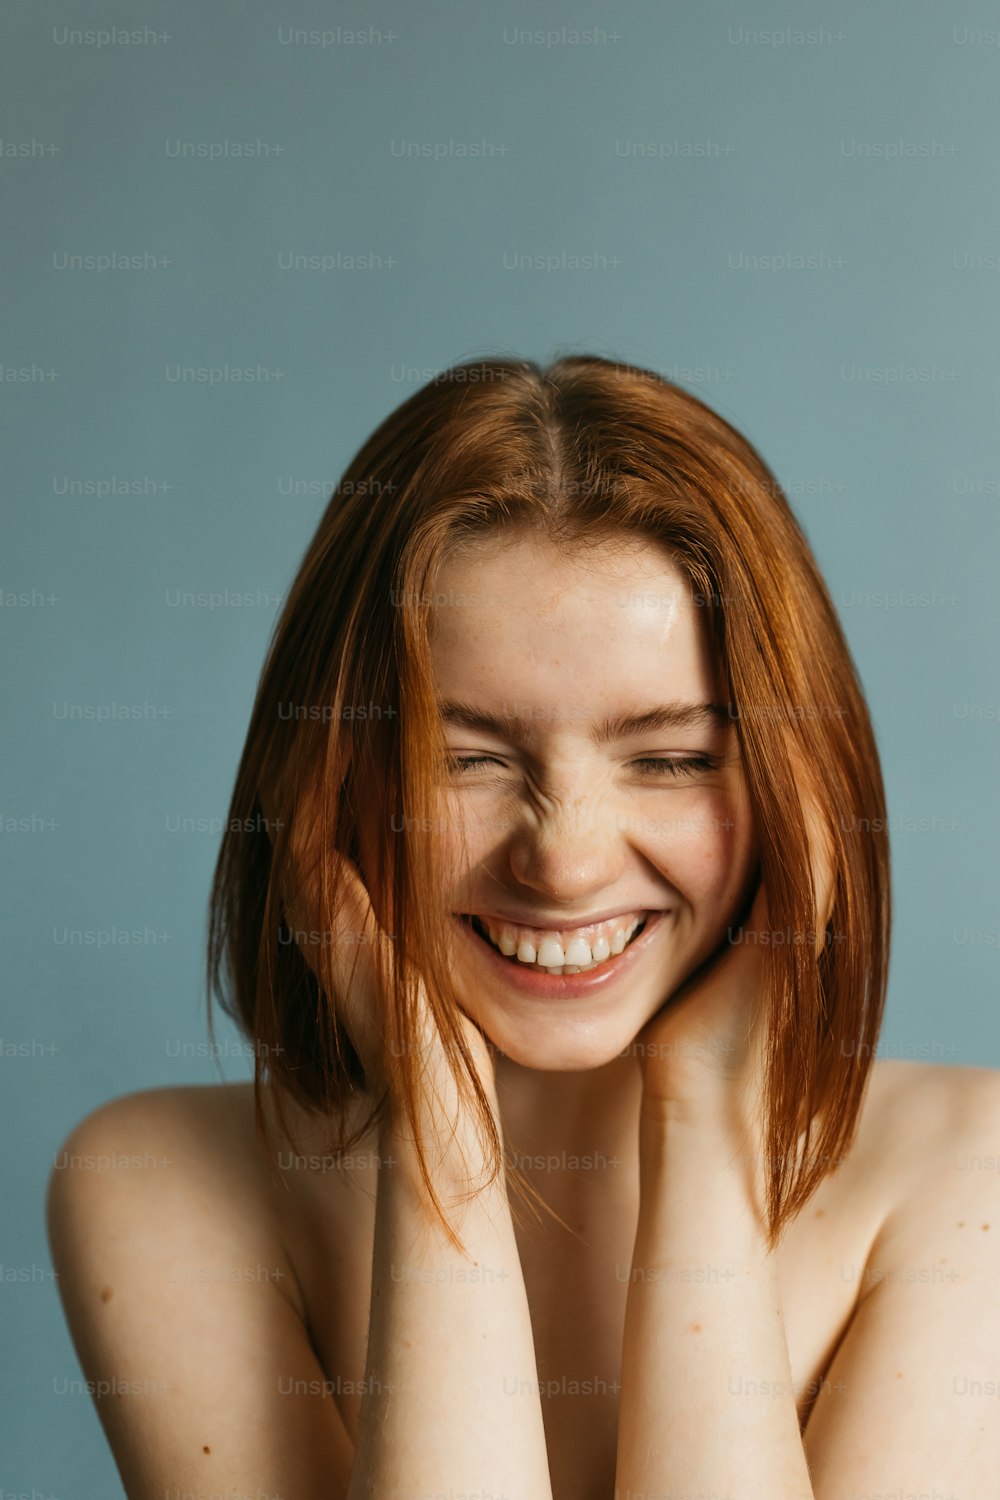 Lachende, temperamentvolle junge rothaarige Frau mit einem strahlenden Lächeln, die ihre Hände vor ihrem Gesicht hält, während sie vor grauem Hintergrund posiert. Glückliche Frau mit nackten Schultern, die mit Niedergeschlagenem lacht